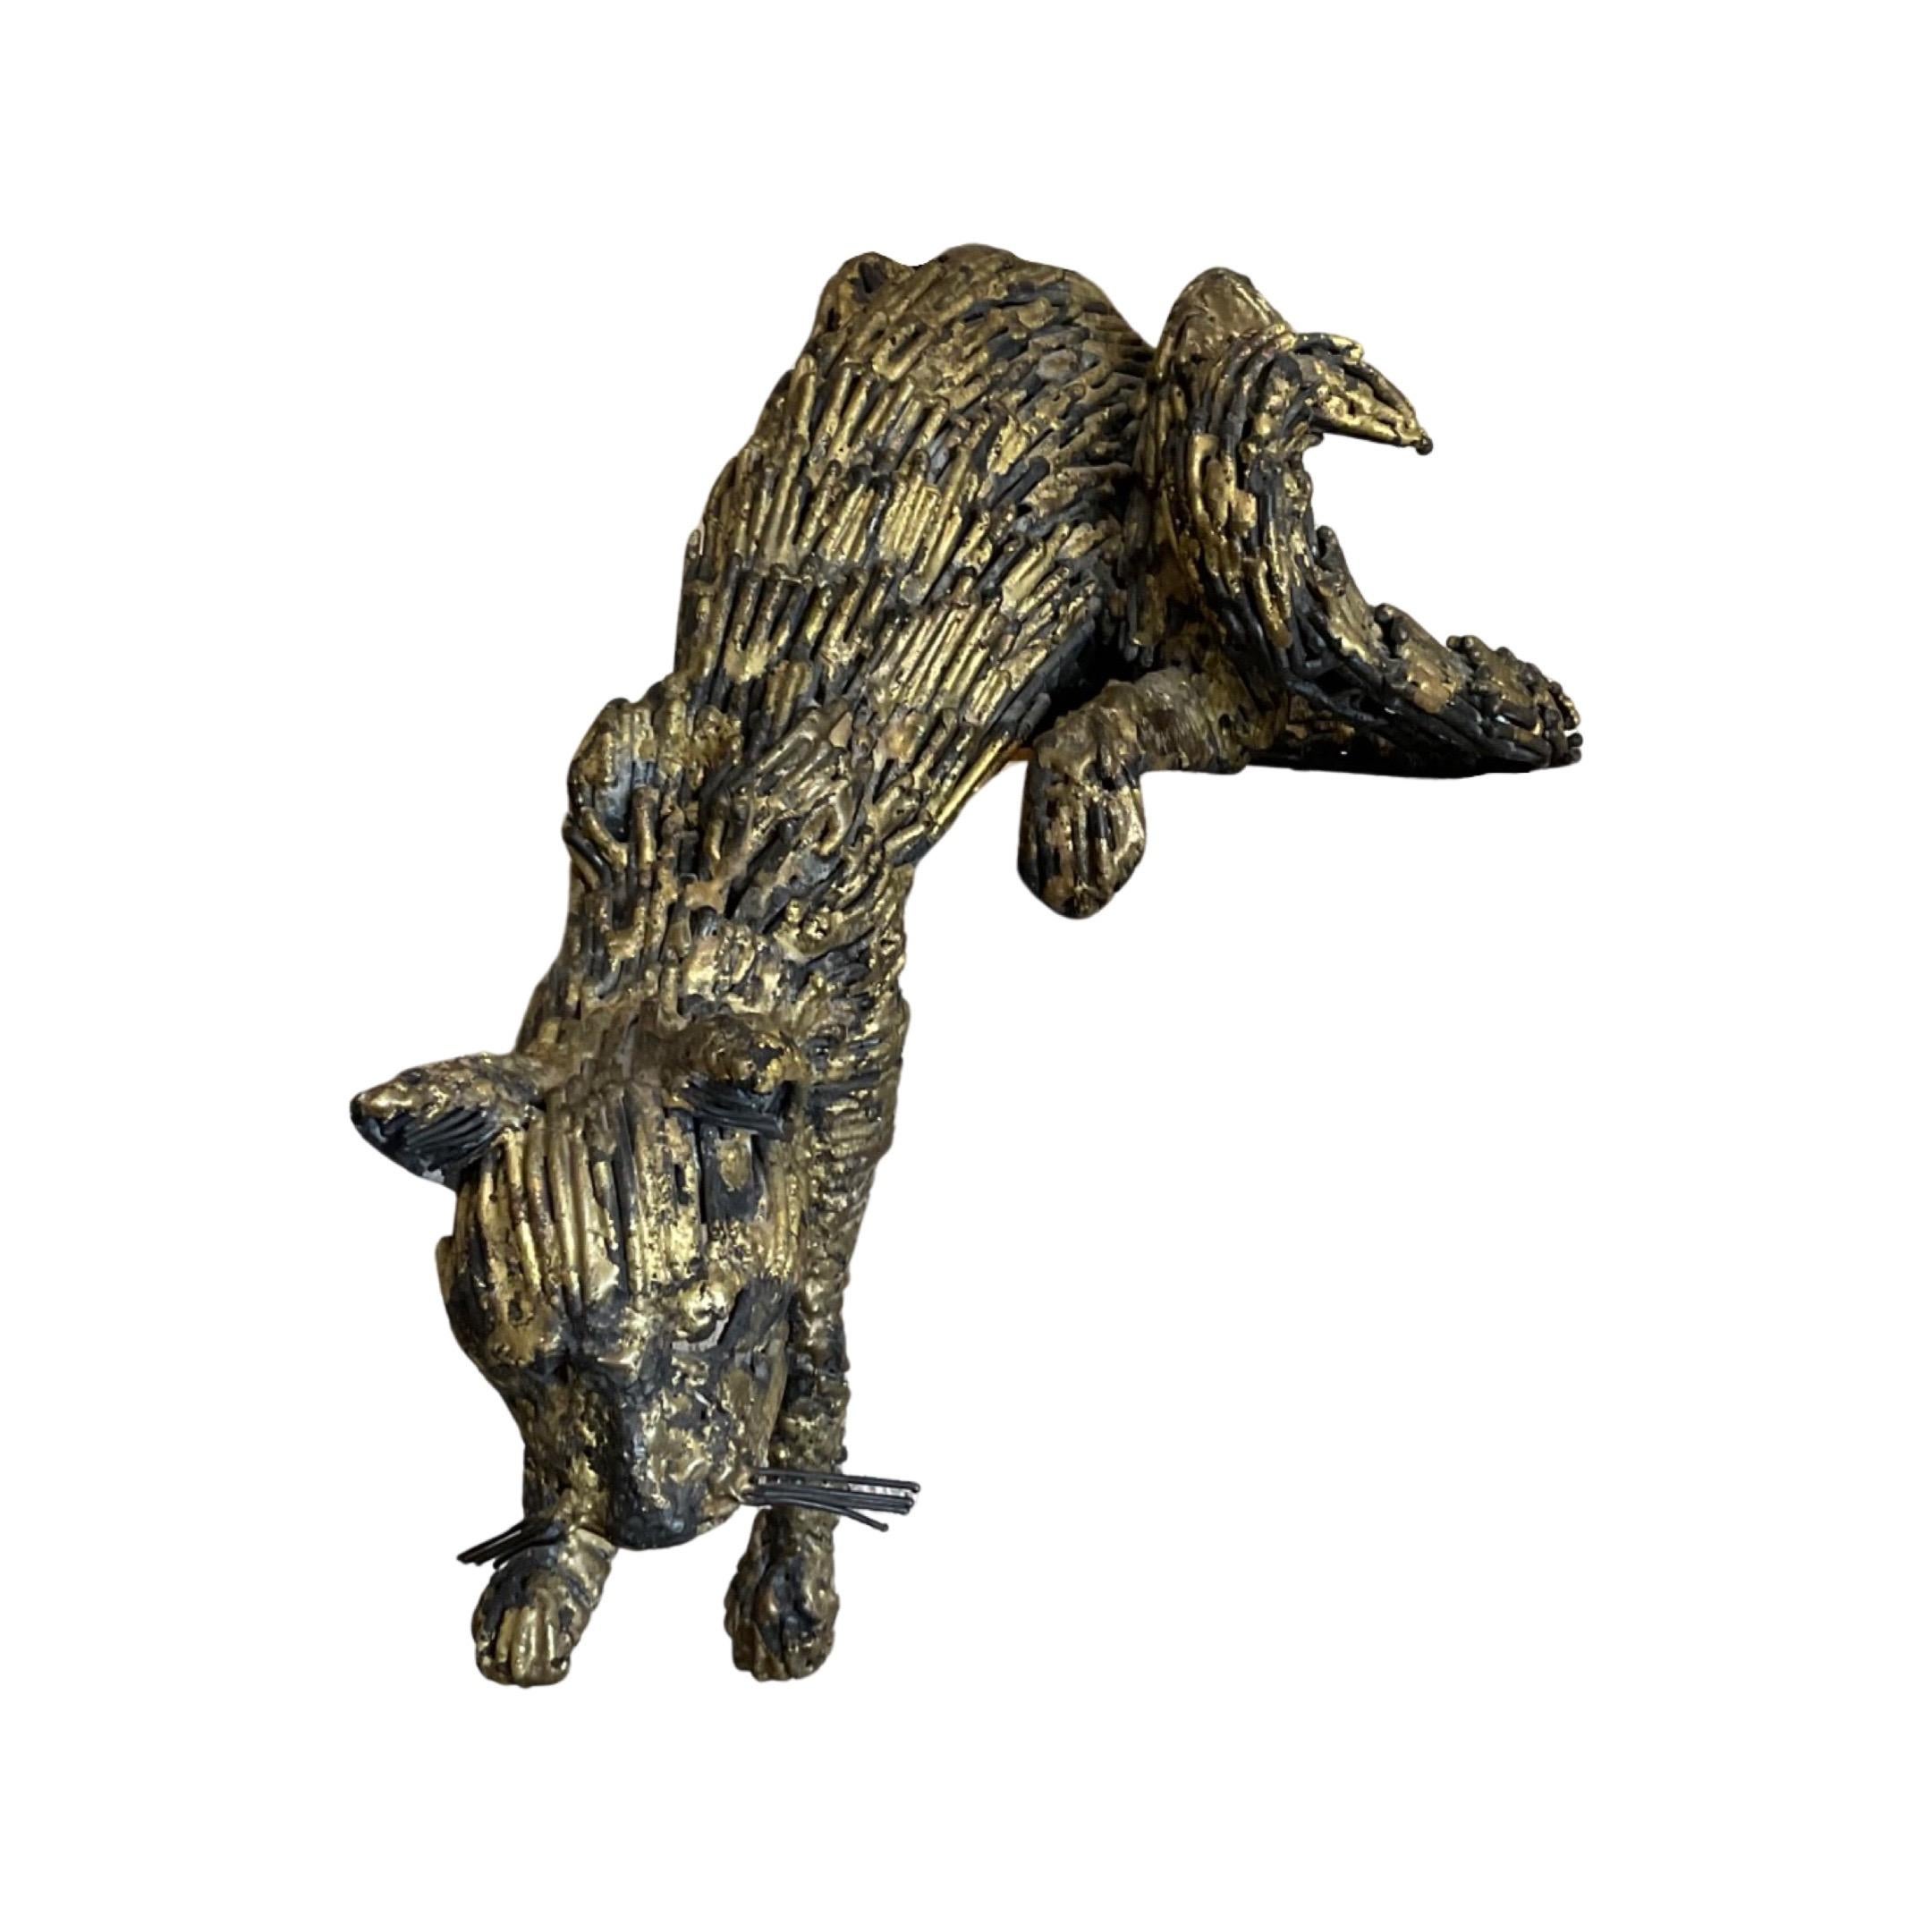 Cette sculpture de chat en bronze de fabrication française datant de 1988 est le moyen idéal d'ajouter une touche artistique unique à votre espace. La finition à la feuille d'or et le design adapté à une suspension sur un rebord en font une pièce